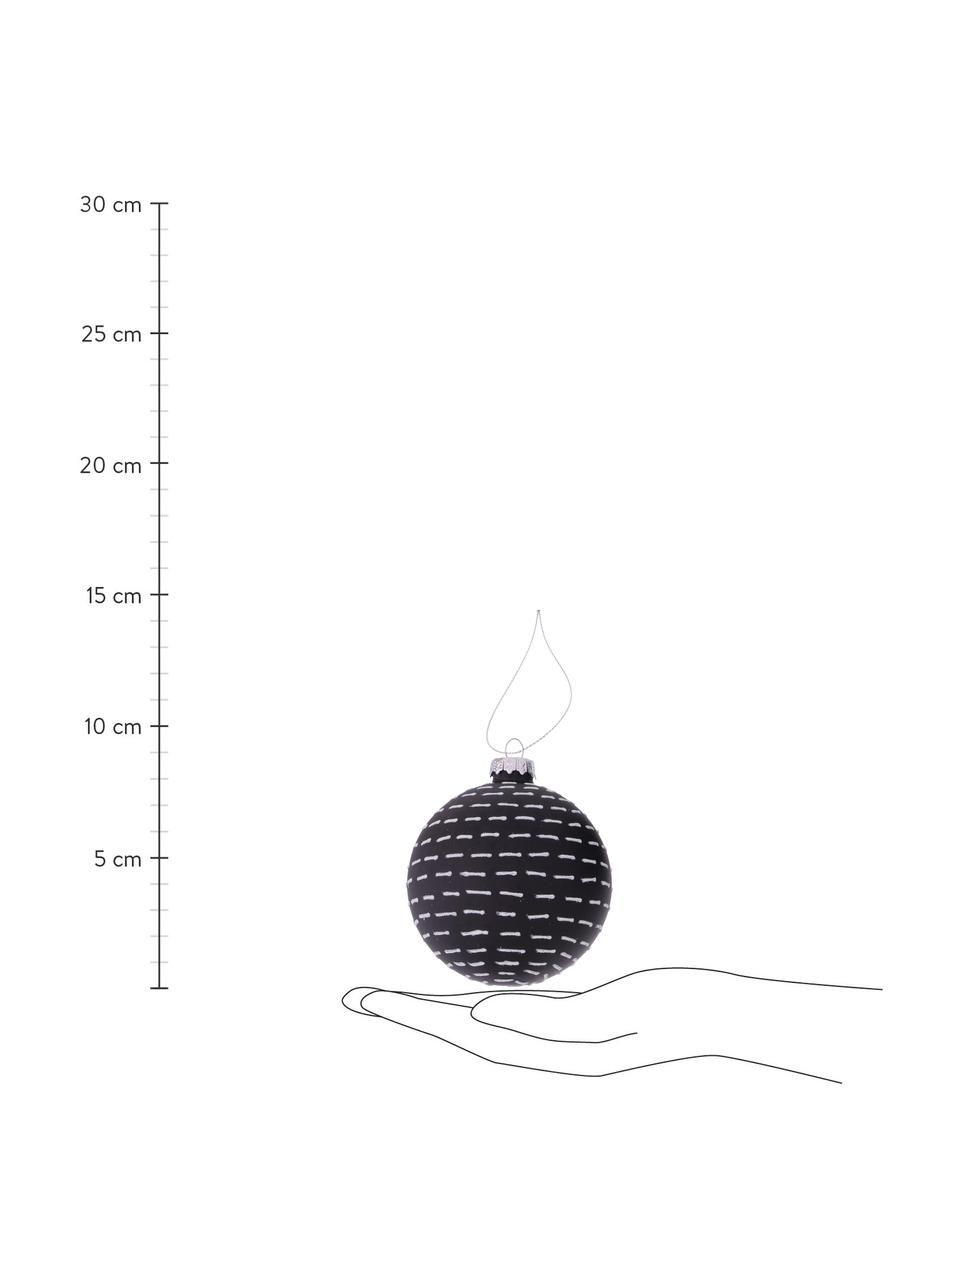 Boules de Noël faites main Illum, 12 élém., Noir, argenté, Ø 8 x 8 cm